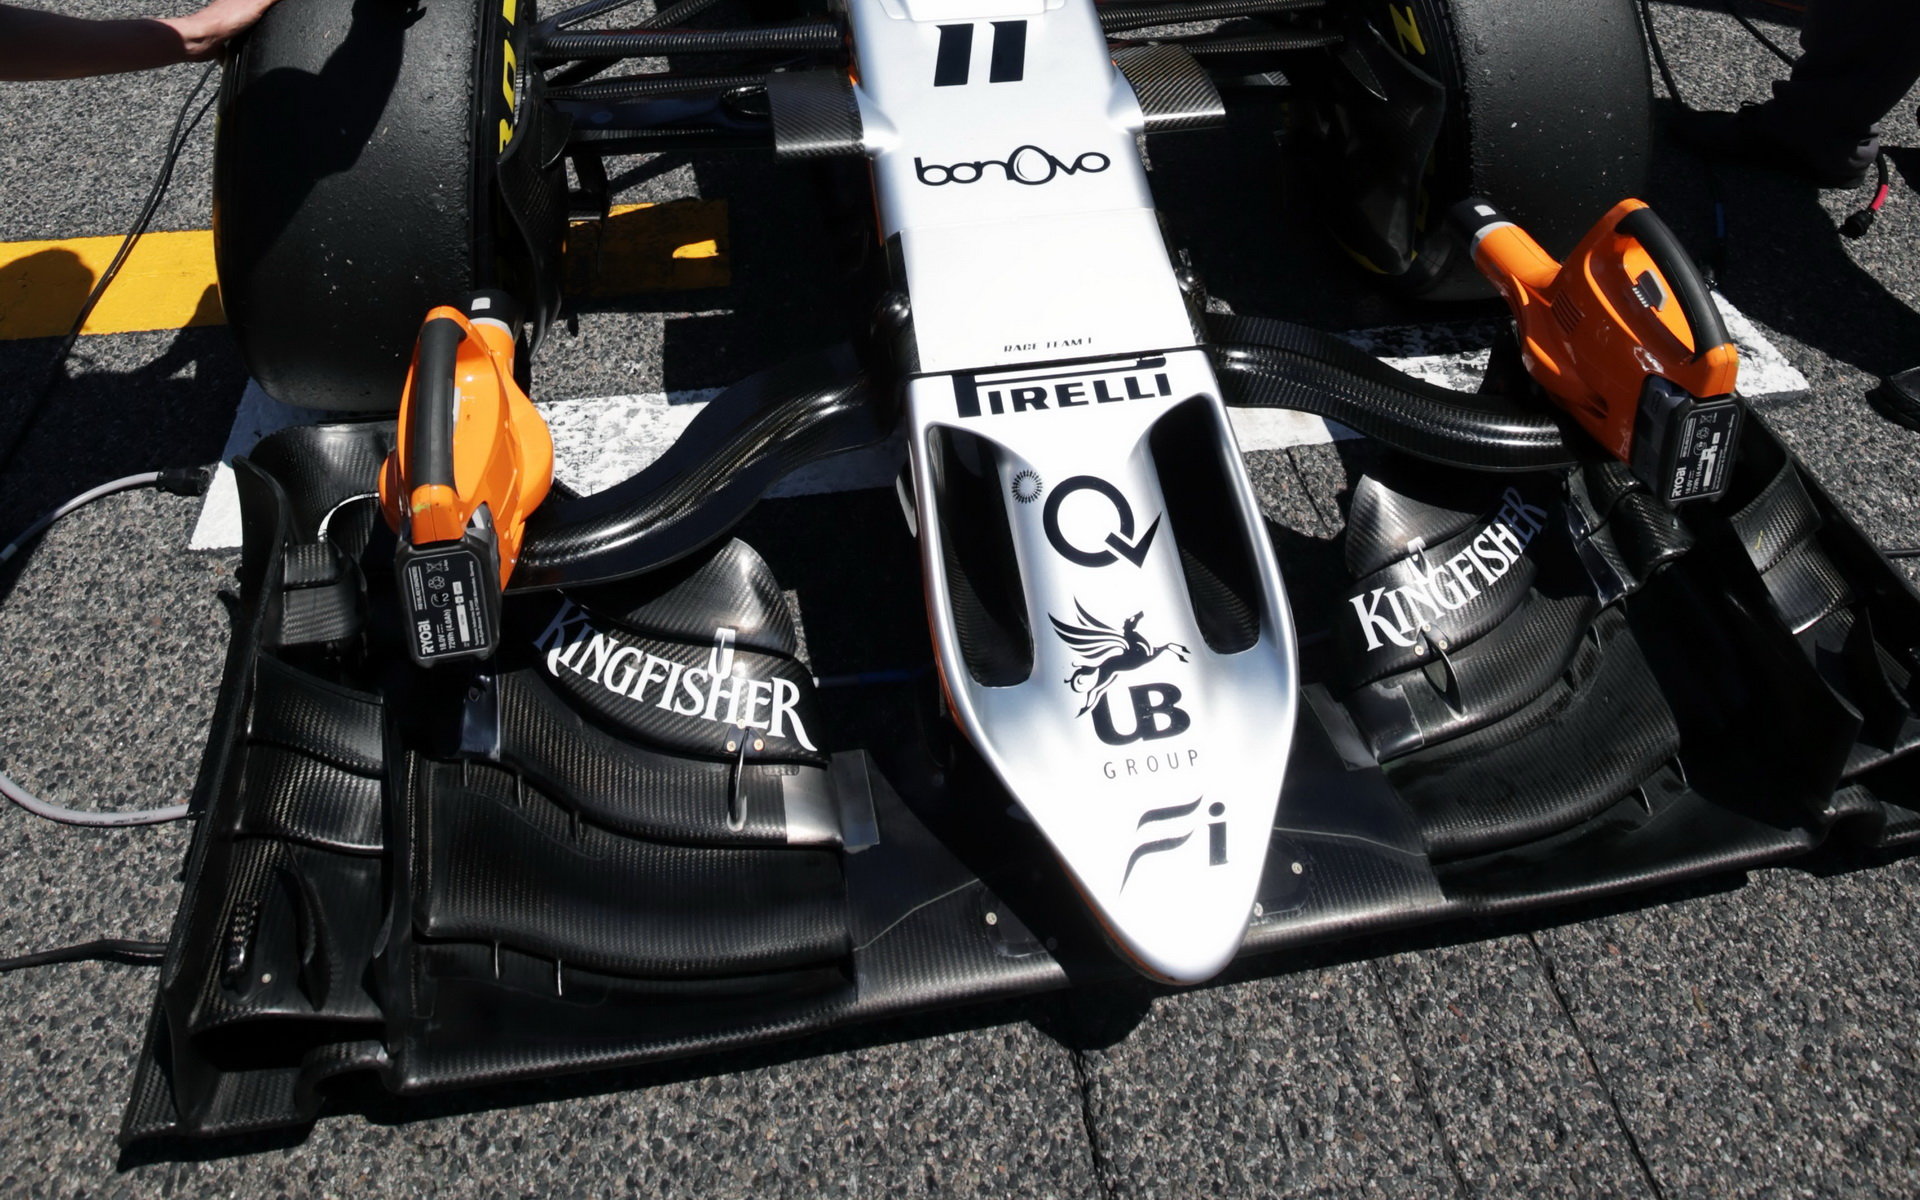 Přední křídlo vozu Force India VJM09 - Mercedes v Barceloně